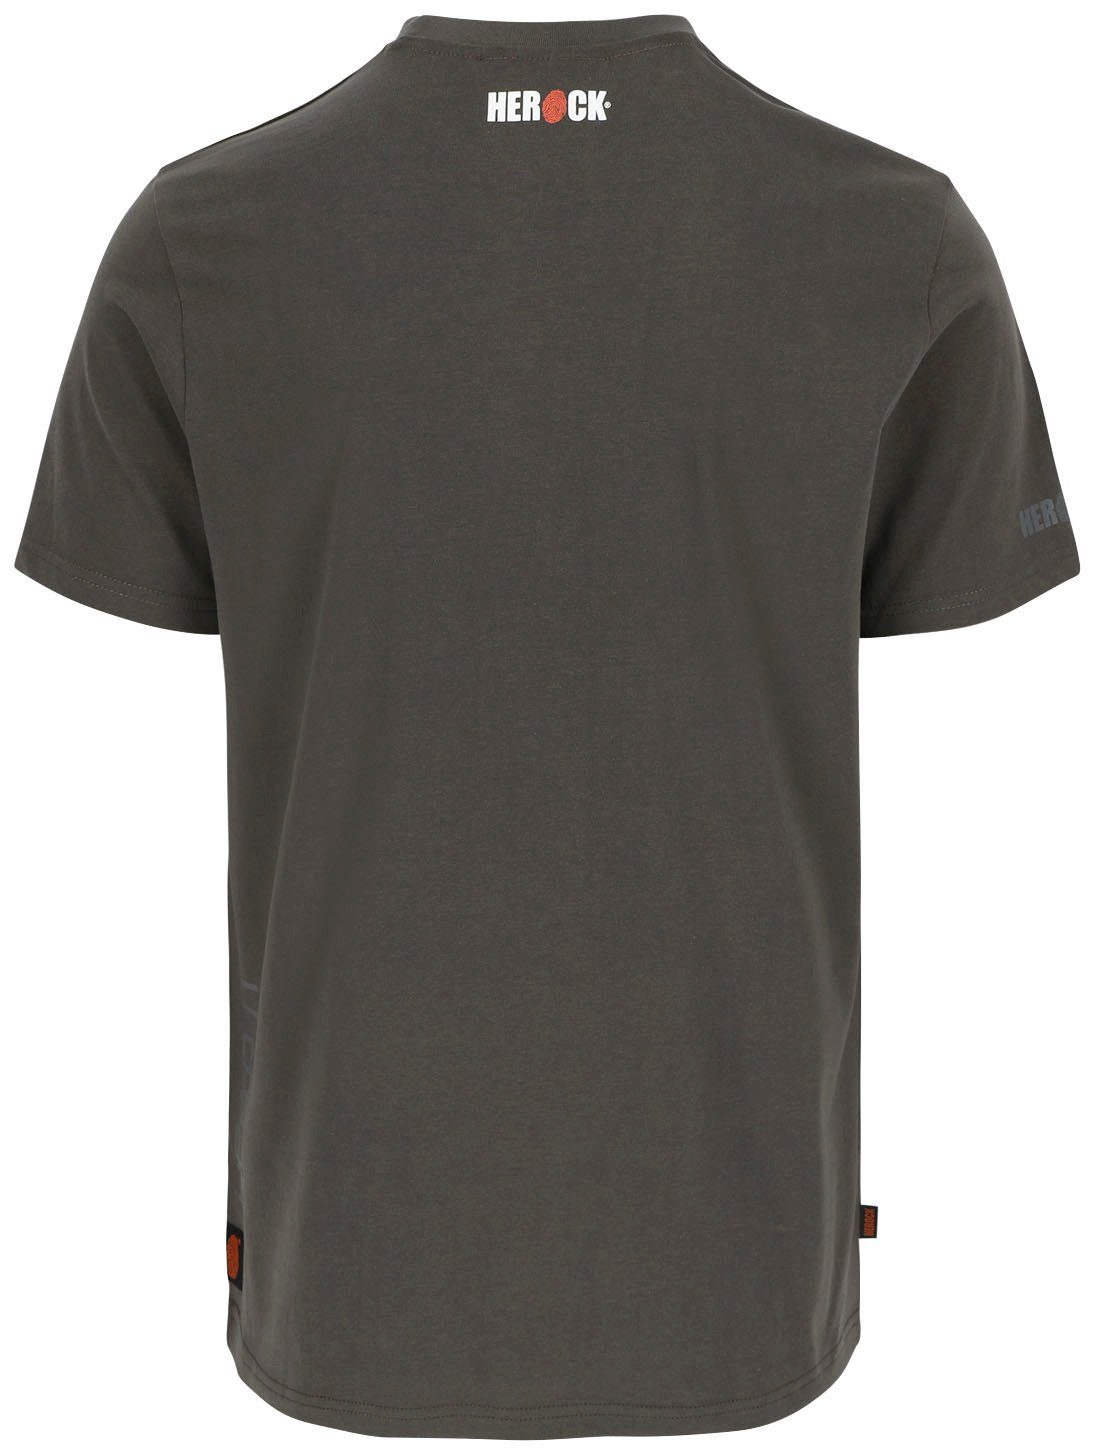 T-Shirt grau Callius T-Shirt Ärmel, Ärmel Herock®-Aufdruck, kurze Rippstrickkragen Rundhalsausschnitt, Herock kurze